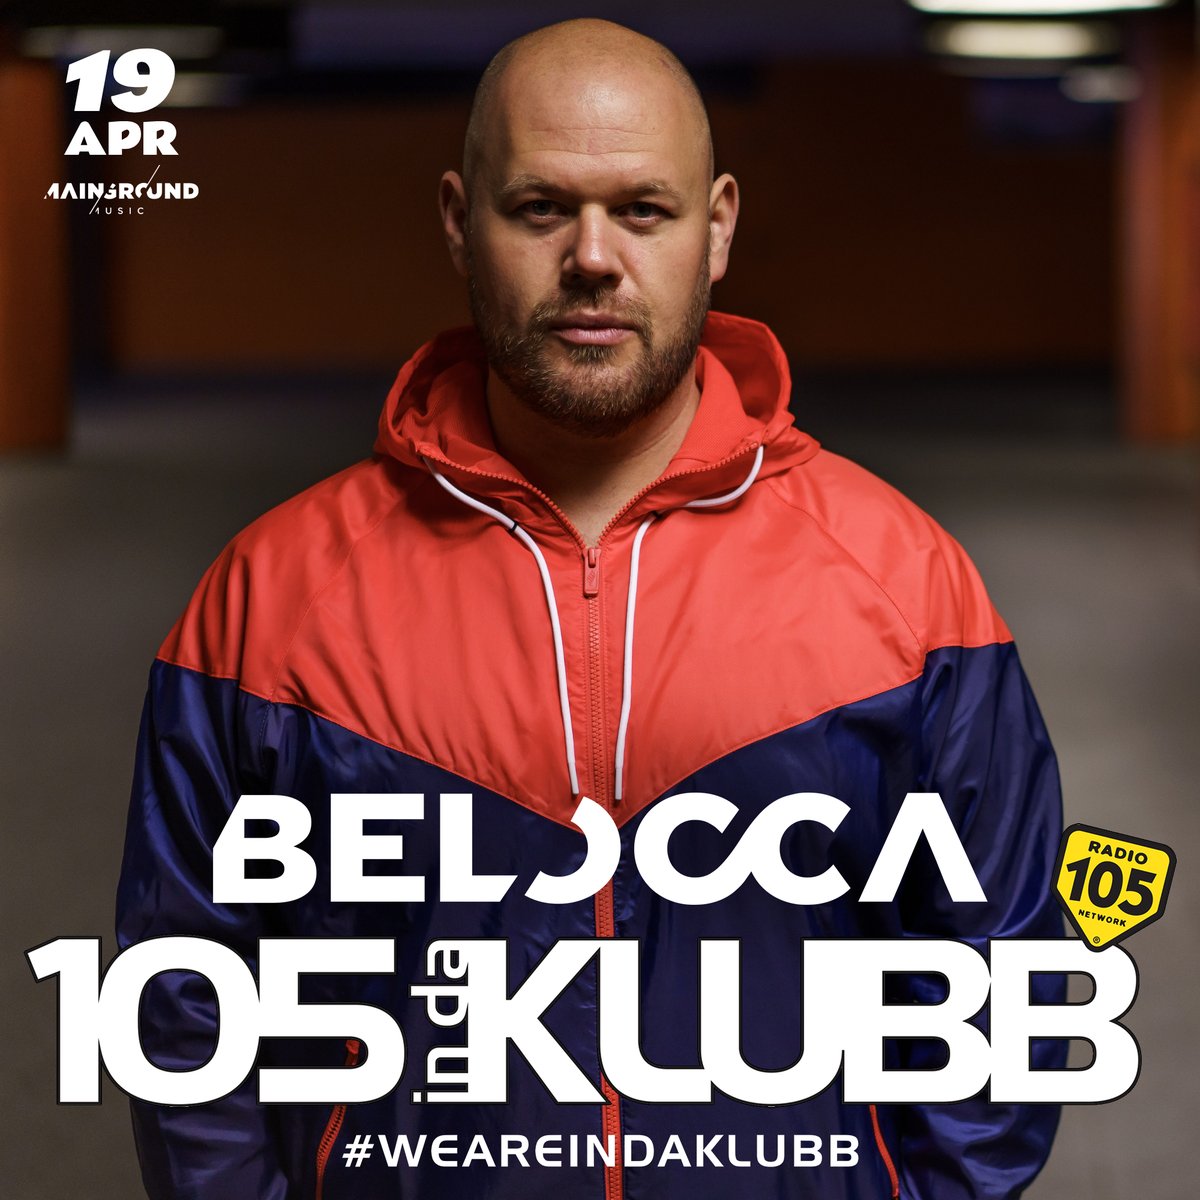 ☑ @belocca on #105INDAKLUBB! ➖ Ogni weekend con il radioshow #MyKlubb di @andreabellidj e con i mixati dei Top dj Italiani e Internazionali ➖ #WEAREINDAKLUBB La notte dance firmata @Radio105 💥 #playitloud ➖ 📌@BasReal